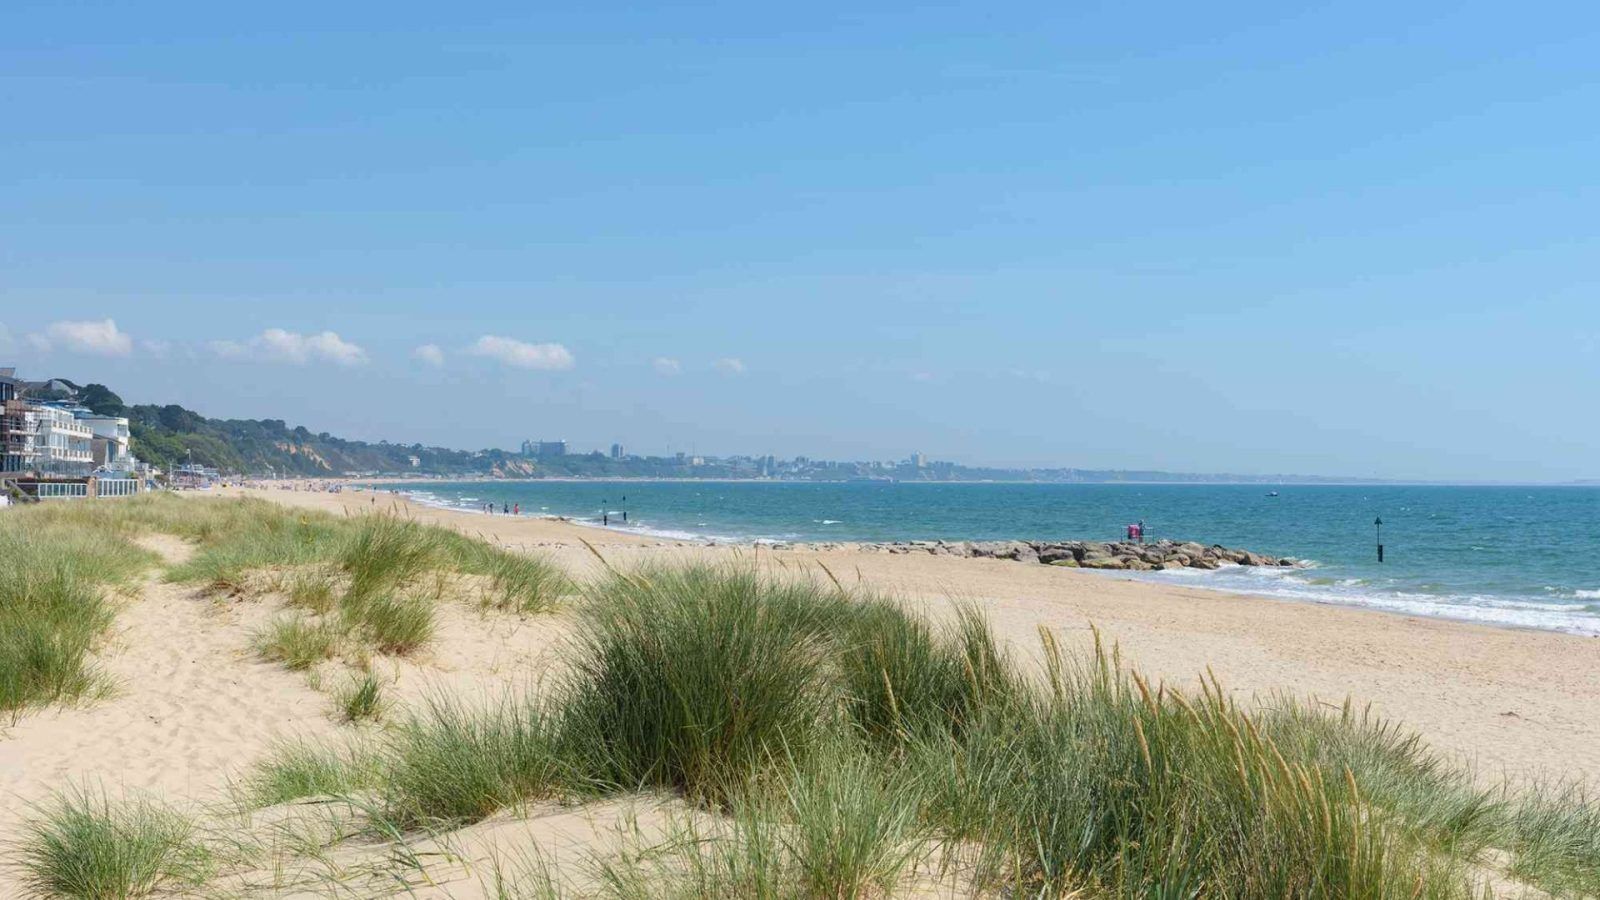 沙洲海滩被评为世界上最可持续的海滩